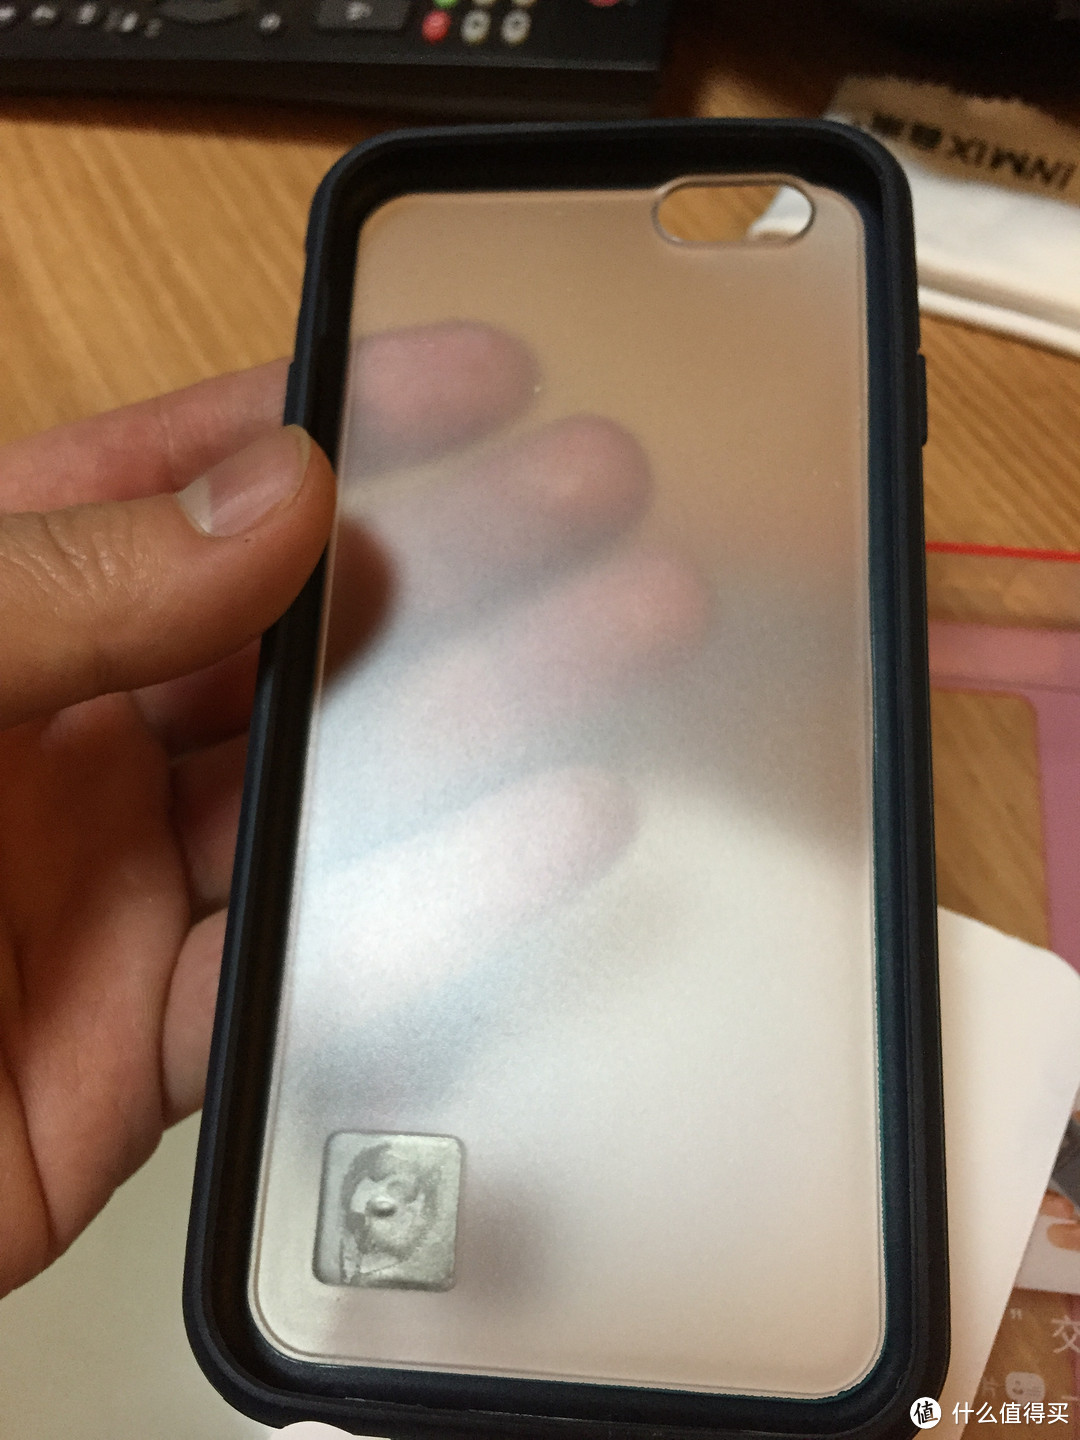 ROCK 洛克 iPhone6智能名片保护壳，不那么靠谱的智能名片保护壳